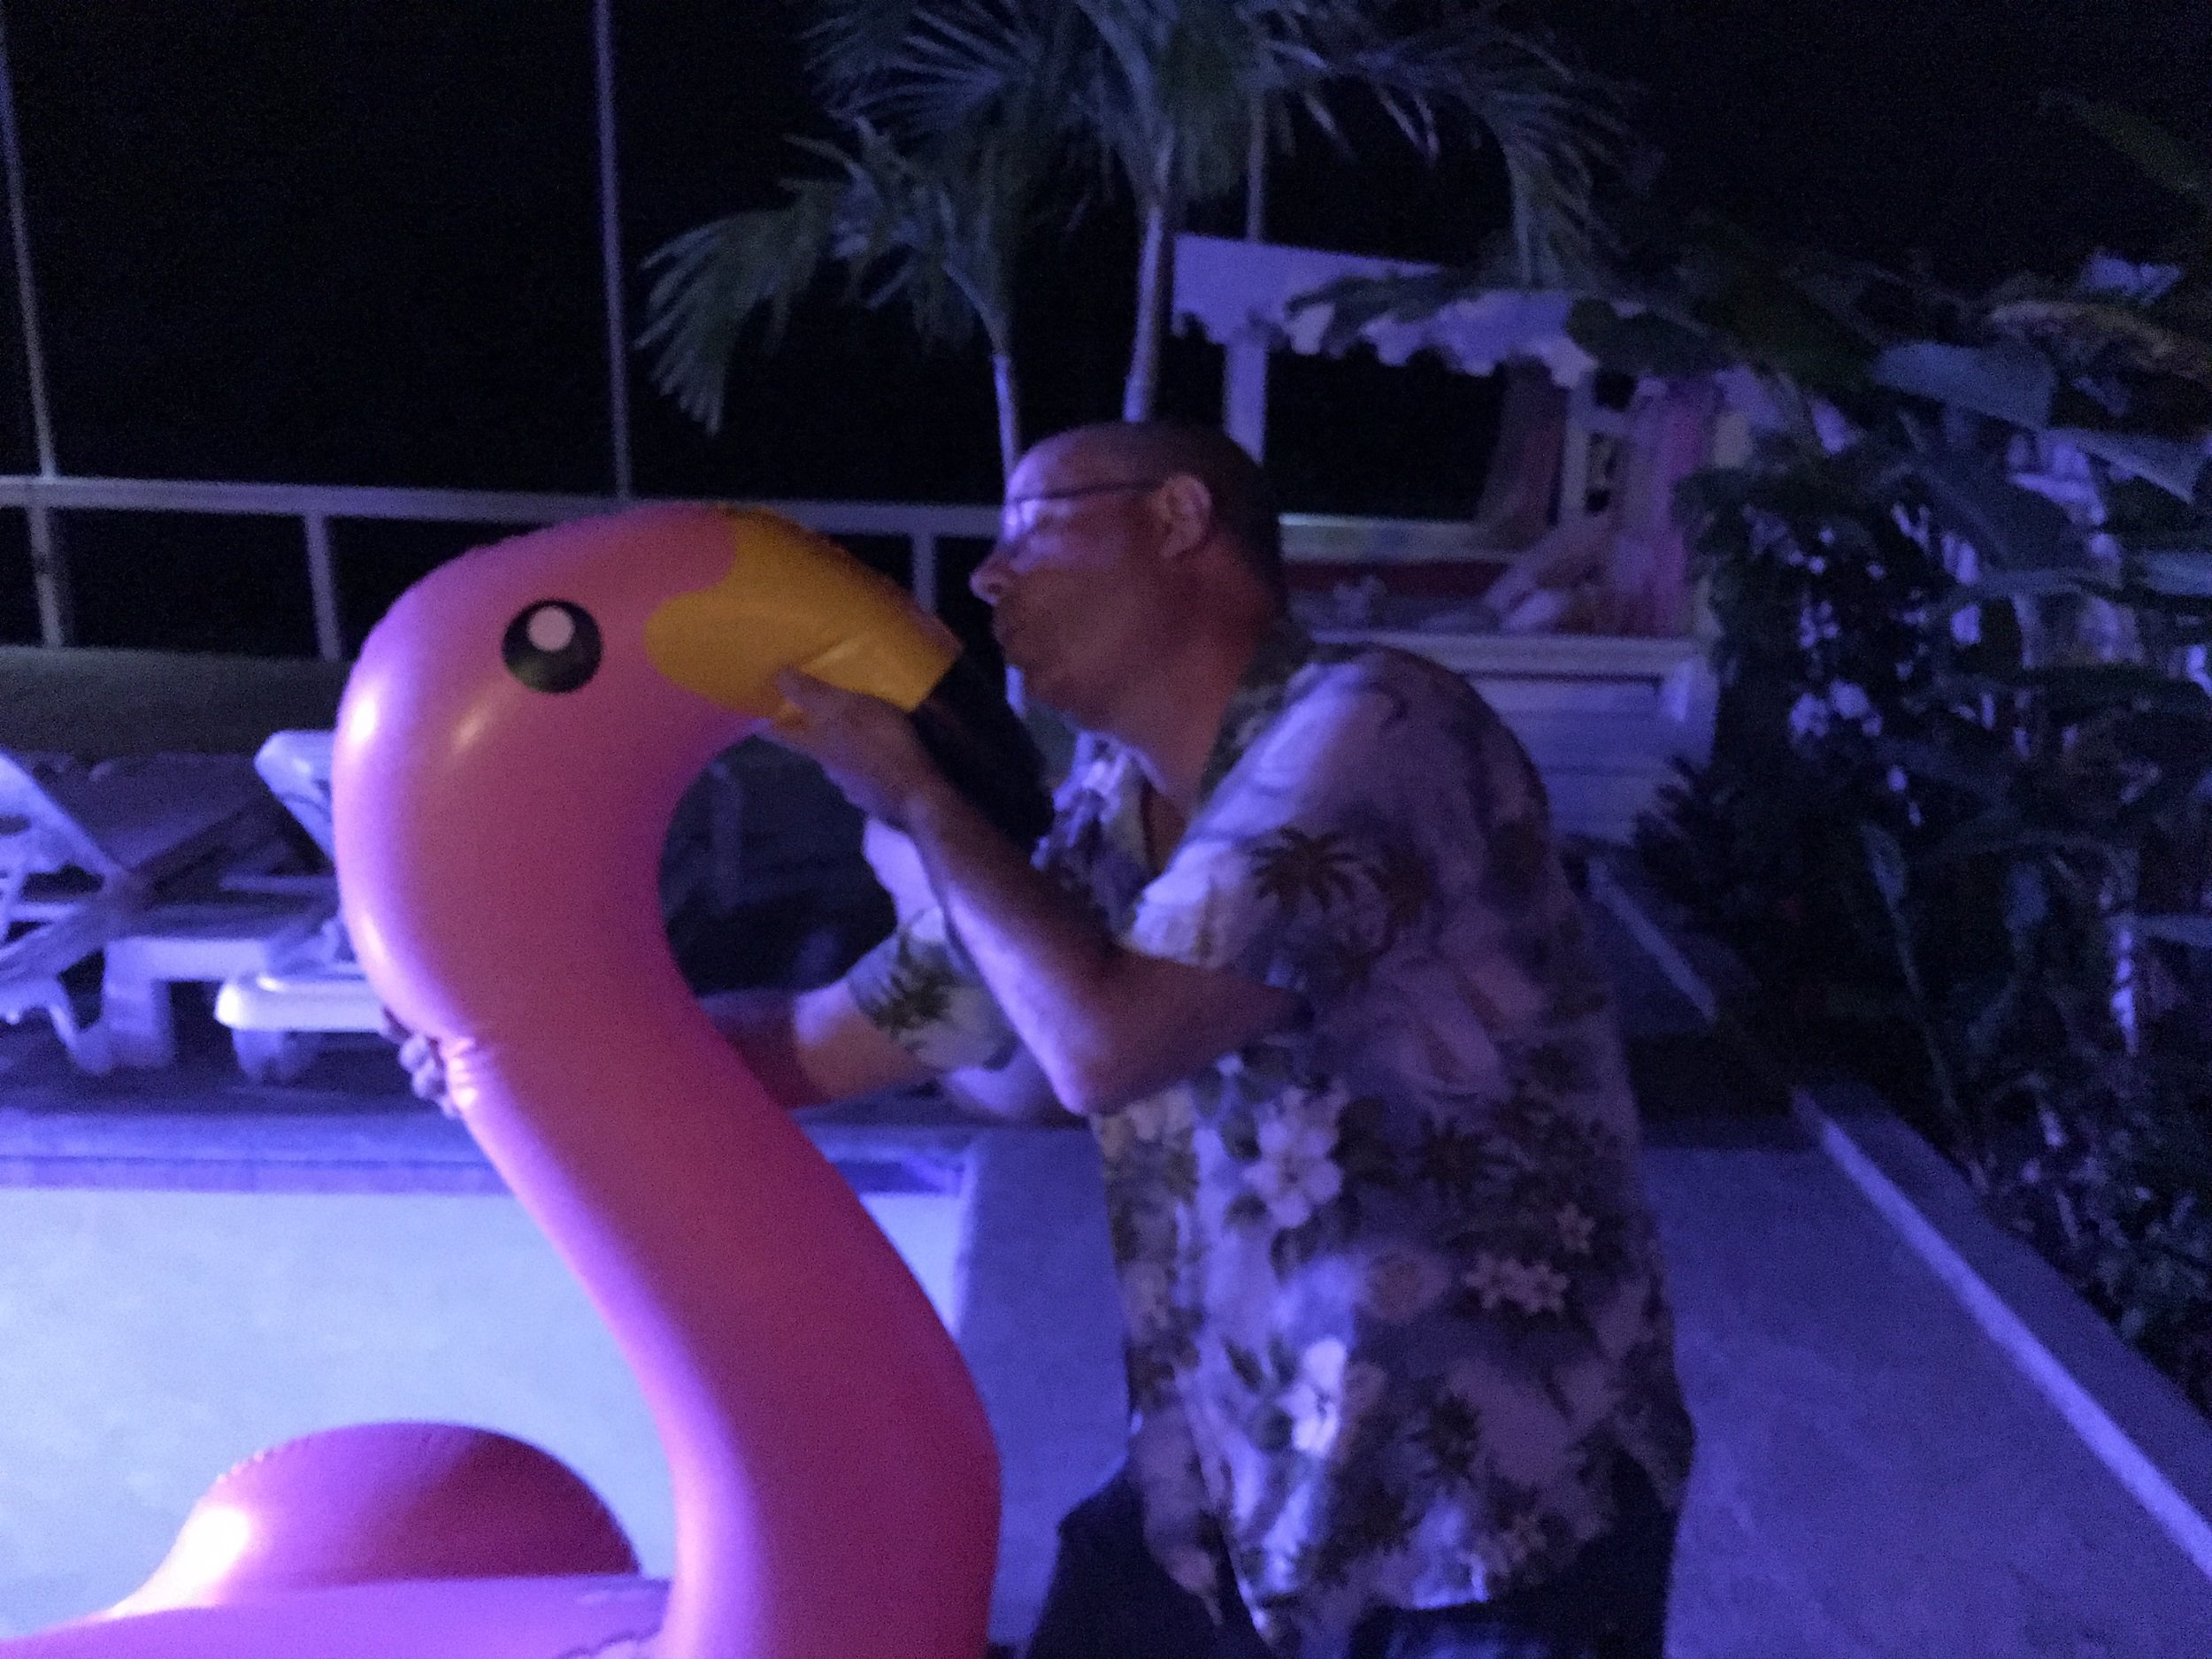 Flamingos are Bonaire's bird, so I figured I should pay my respects...